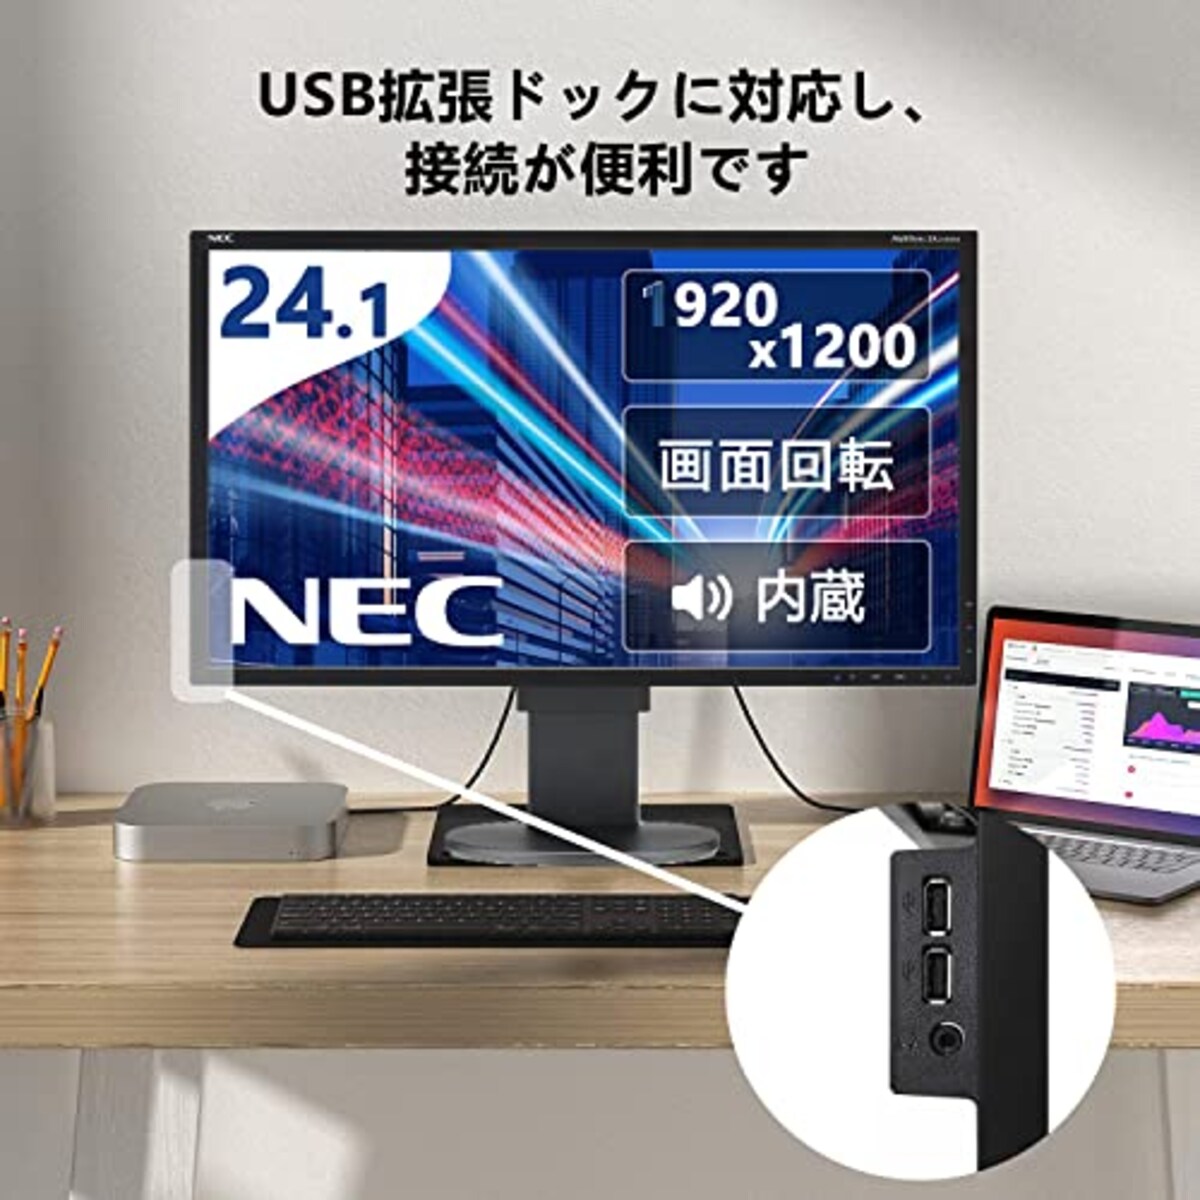  【整備済み品】NEC 24.1インチ IPSモニター ディスプレイ フルHD WUXGA 1920x1200 16:10 画面回転 高さ調整 縦型 USBハブ スピーカー内蔵 HDMI対応 Switch&PlayS画像2 